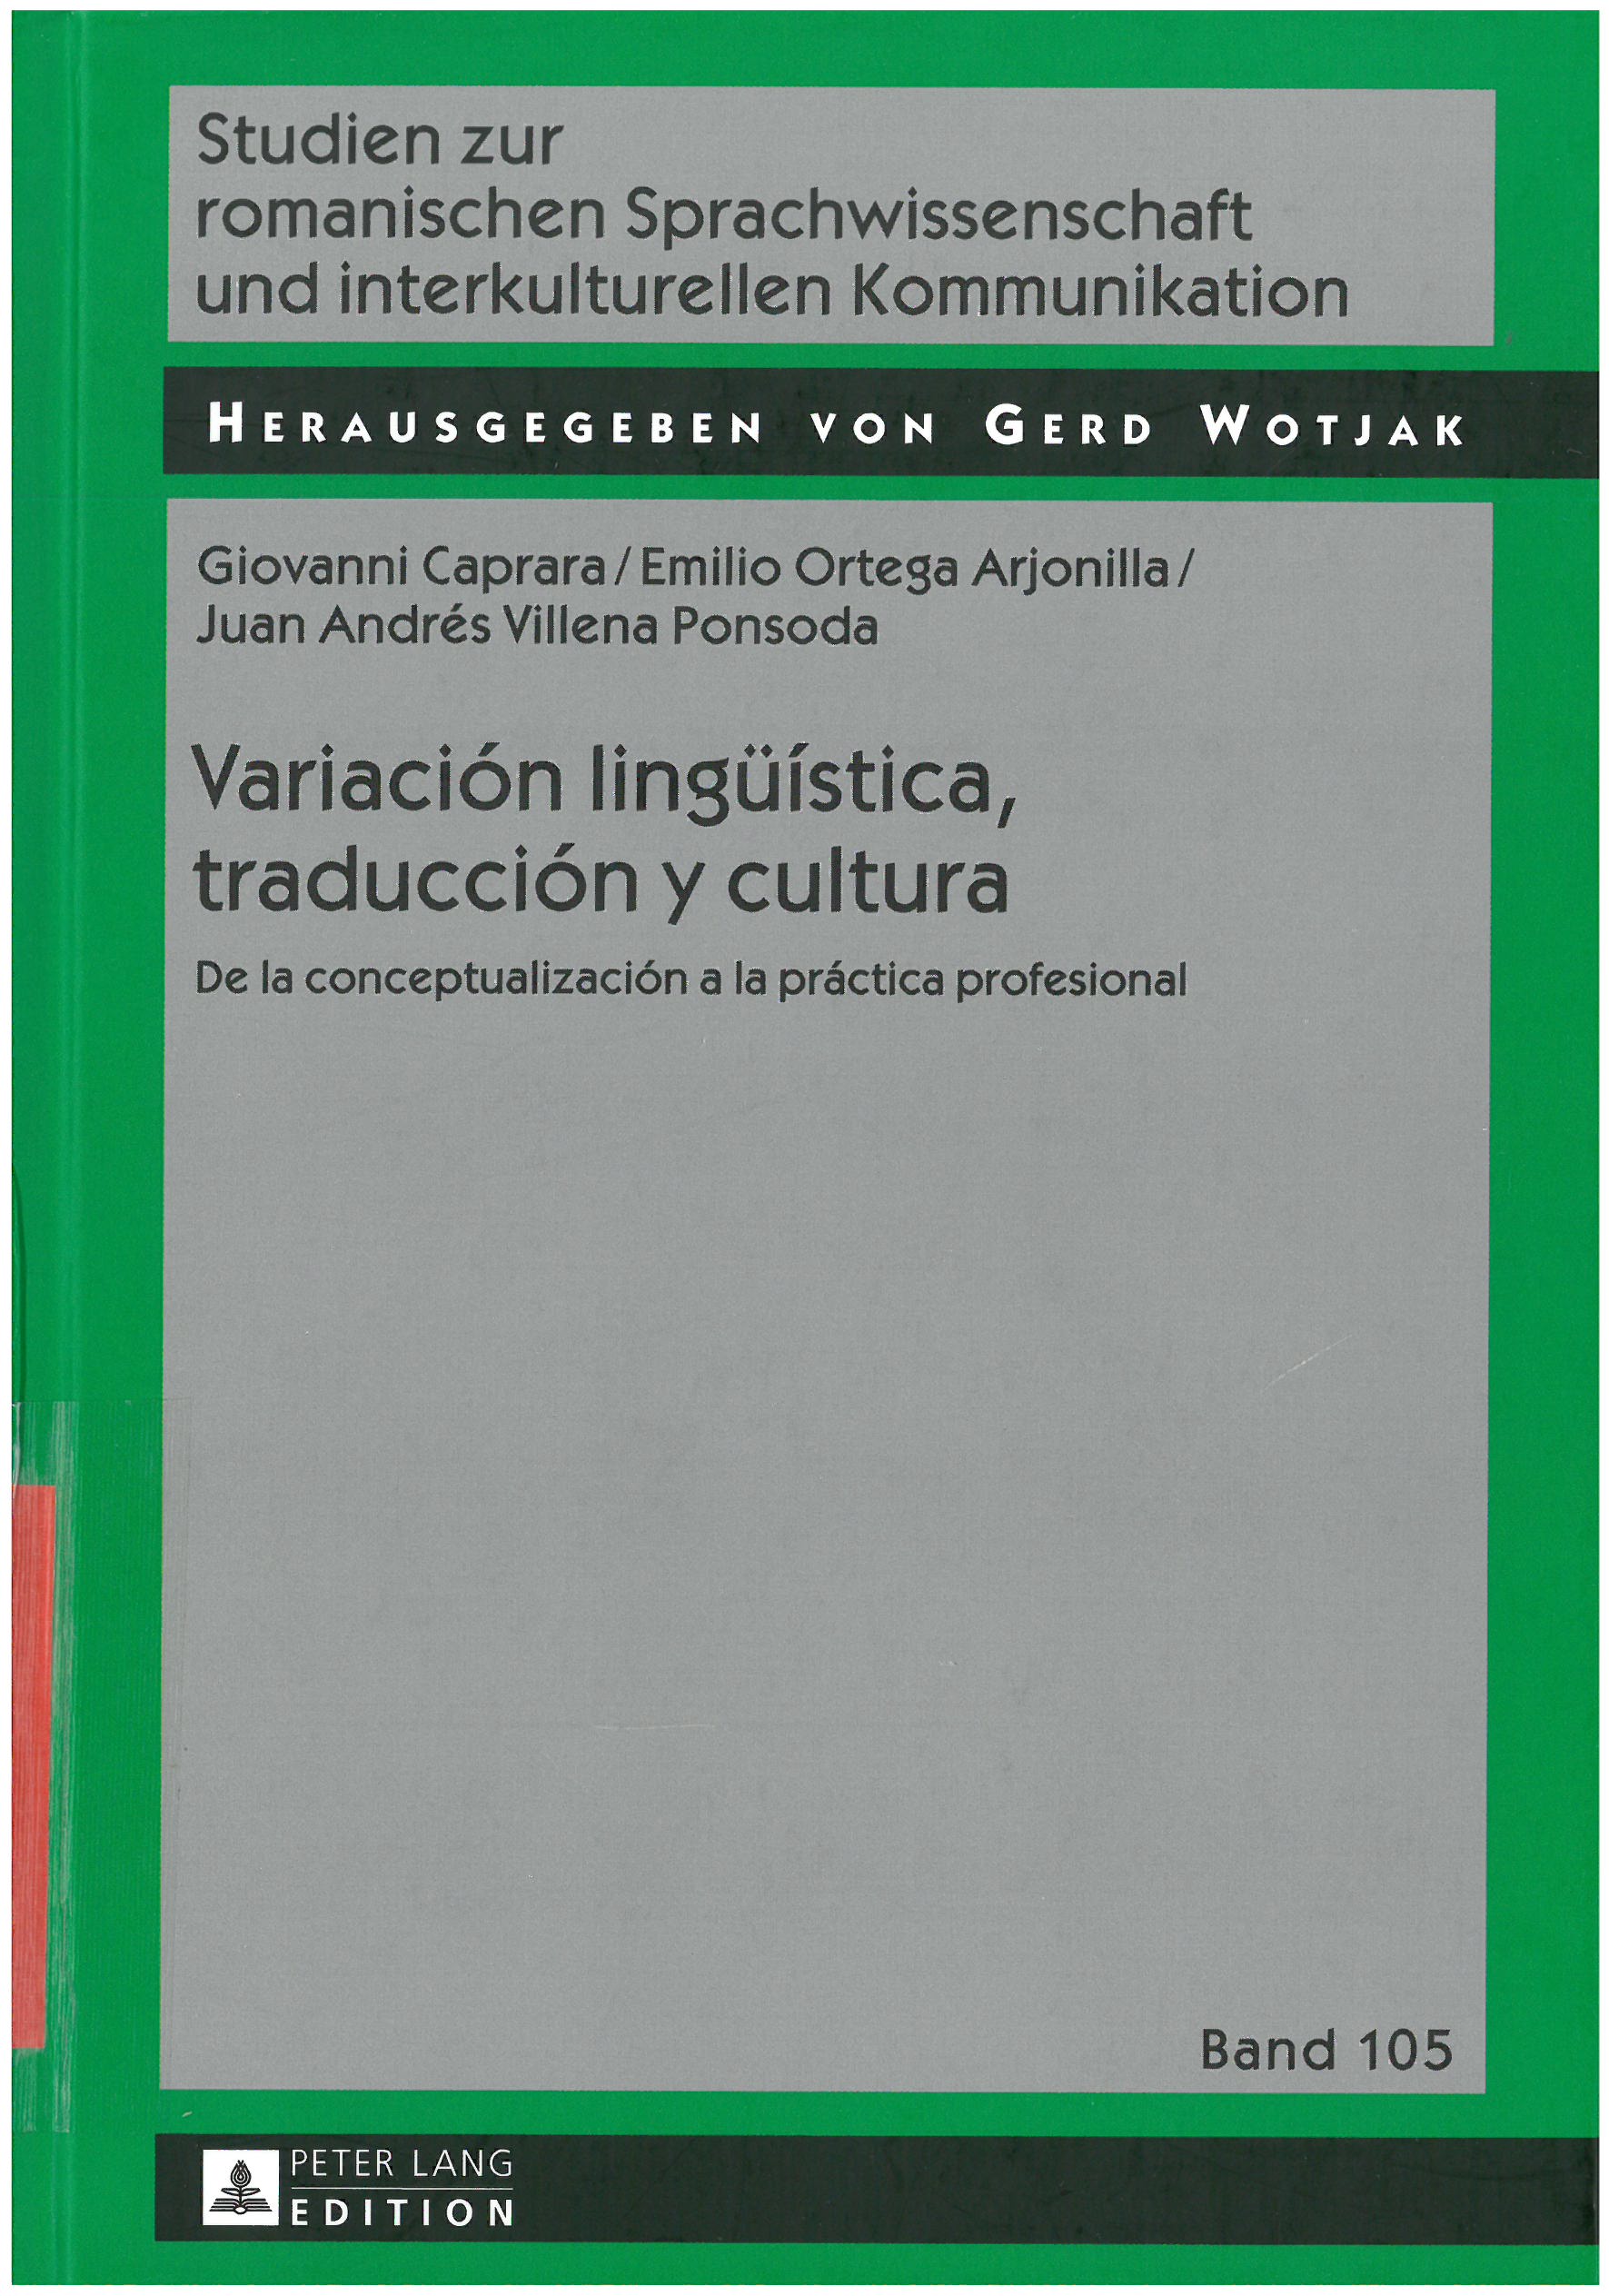 Imagen de portada del libro Variación lingüística, traducción y cultura